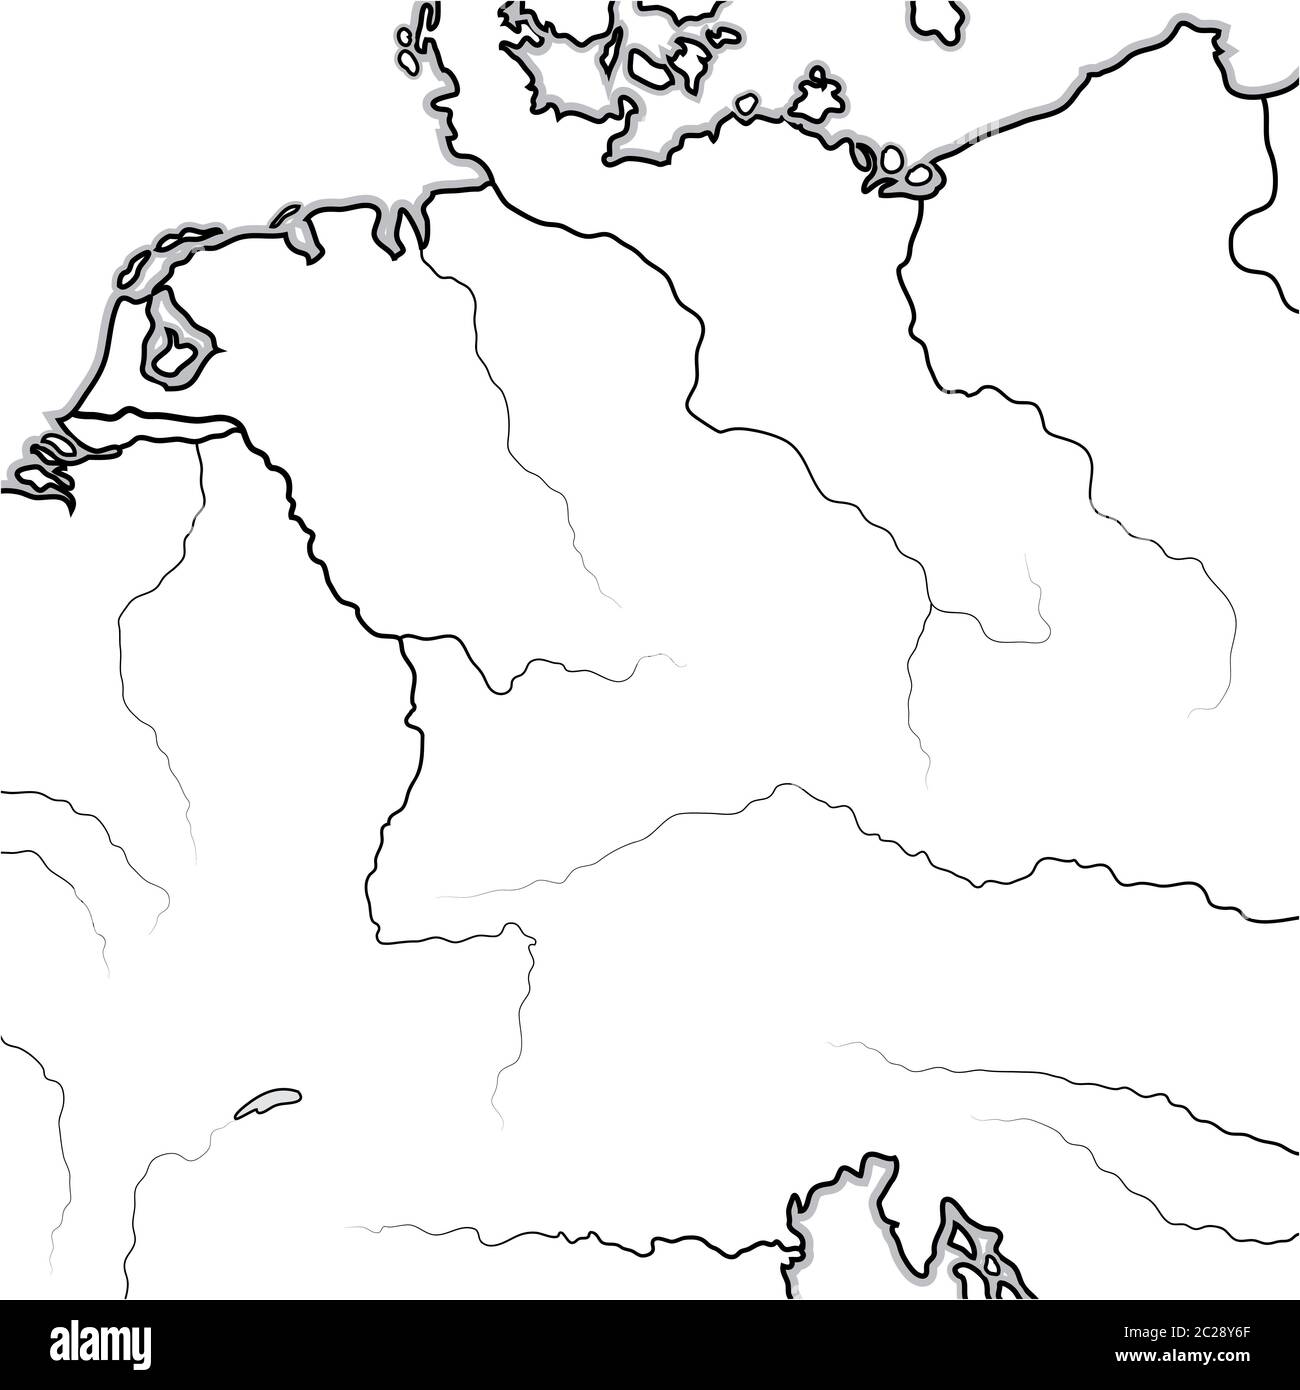 Carte des terres ALLEMANDES: Allemagne, Saxe, Bavière, Teutonia, Prusse, Autriche. Carte géographique. Banque D'Images